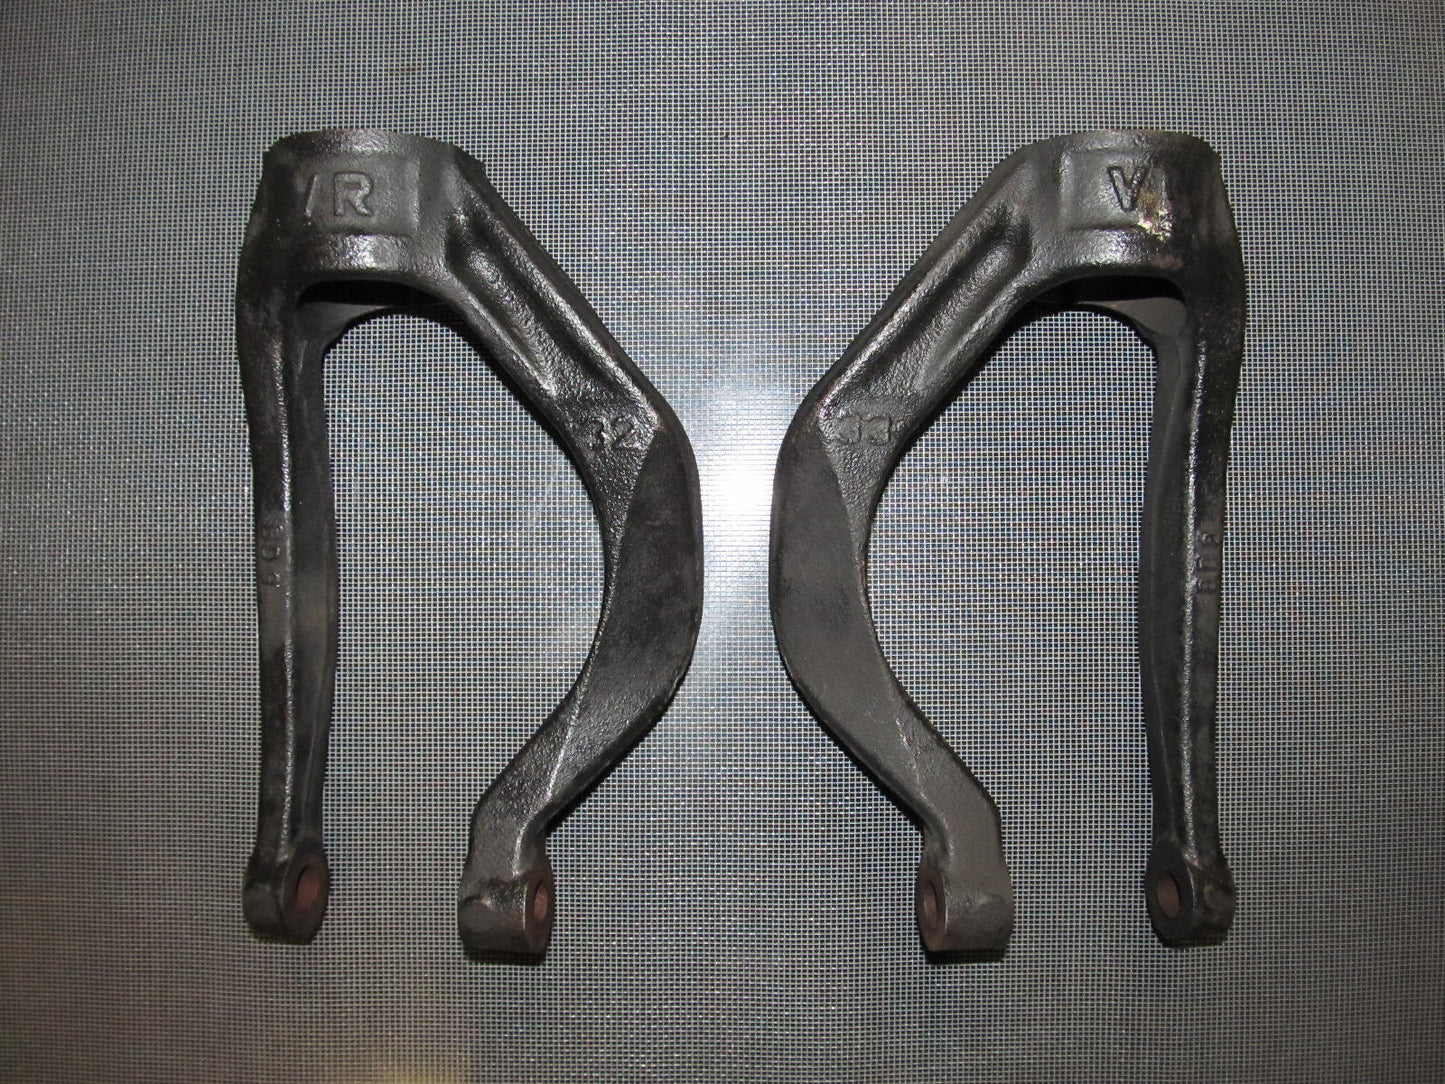 88-91 Crx OEM Front Suspension Shock Sturt Fork - Set